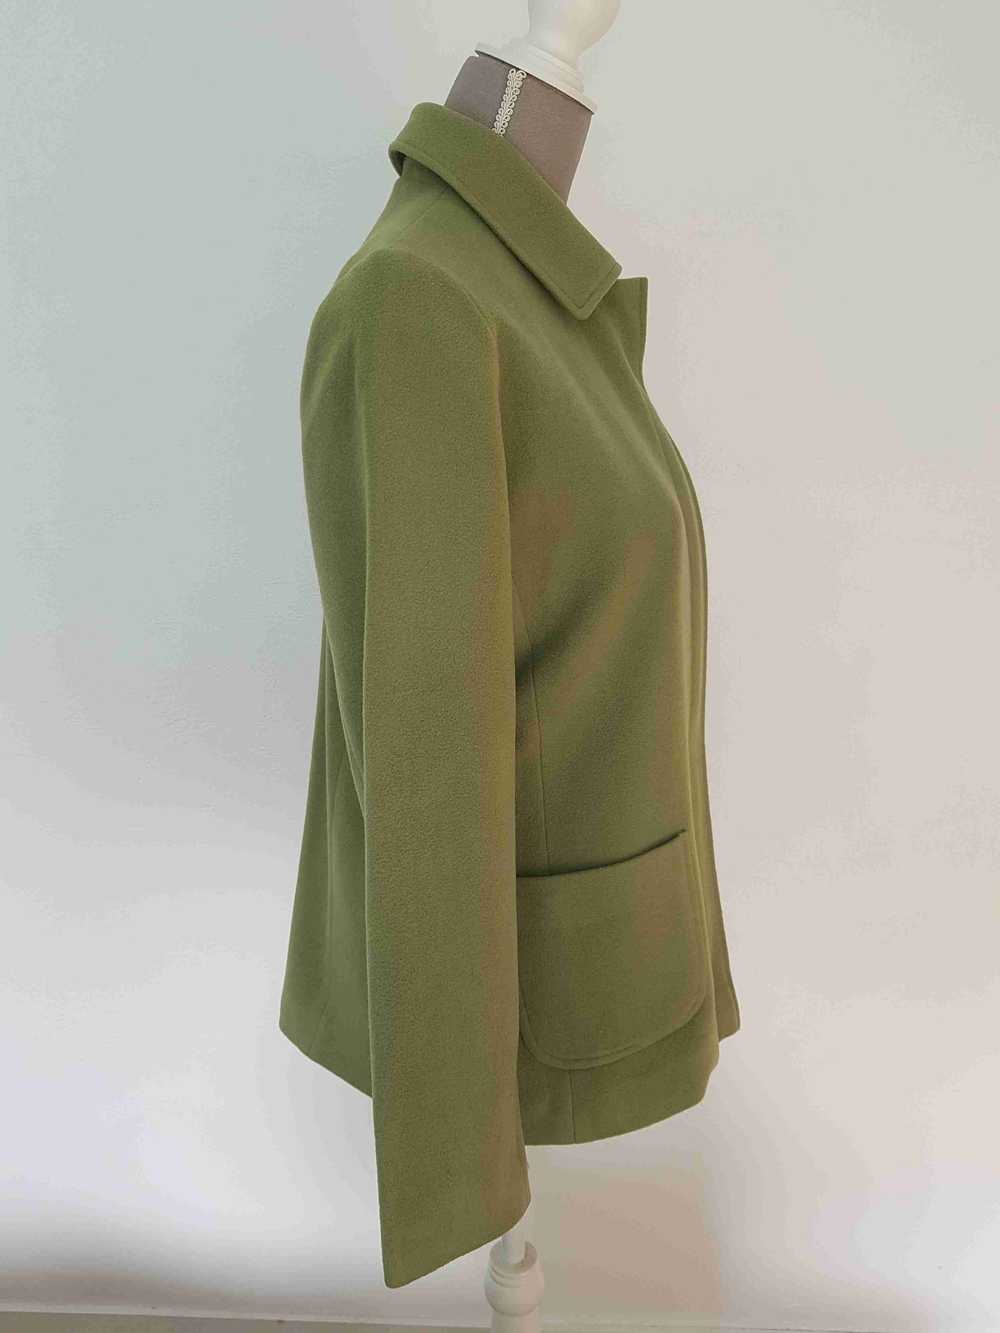 70's jacket - 70's jacket, fleece effect, apple g… - image 4